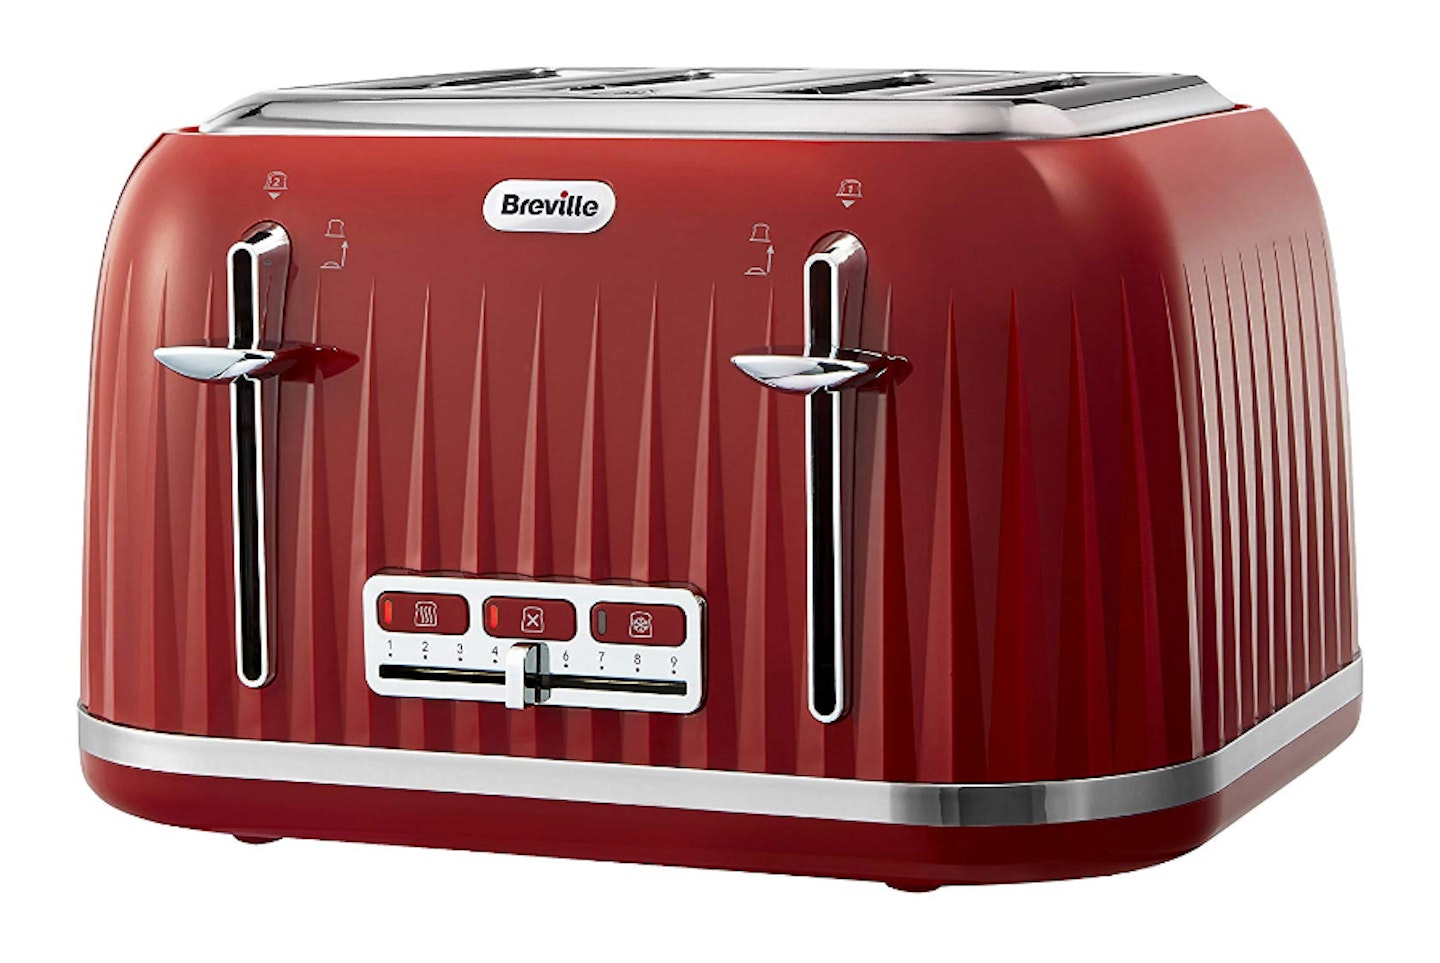 Breville Impressions 4-Slice Toaster